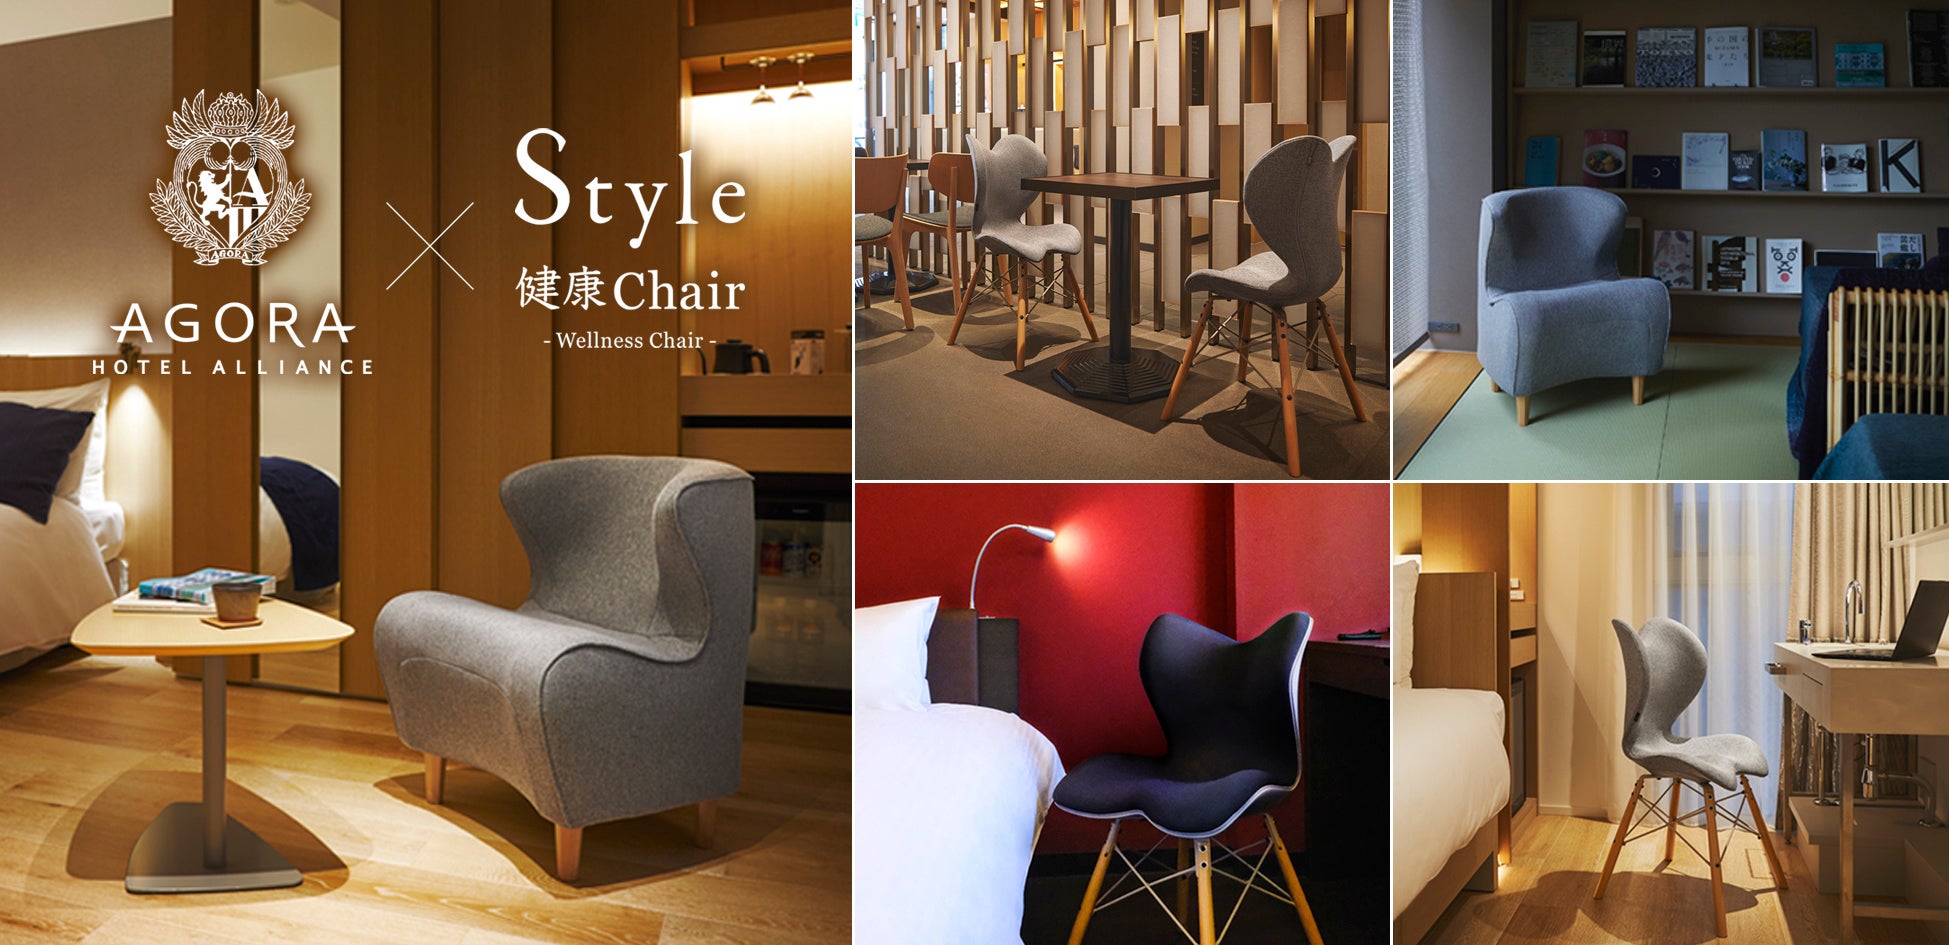 姿勢サポートブランド「Style」 国内6つのホテルに新商品「Style健康Chair」の導入決定。